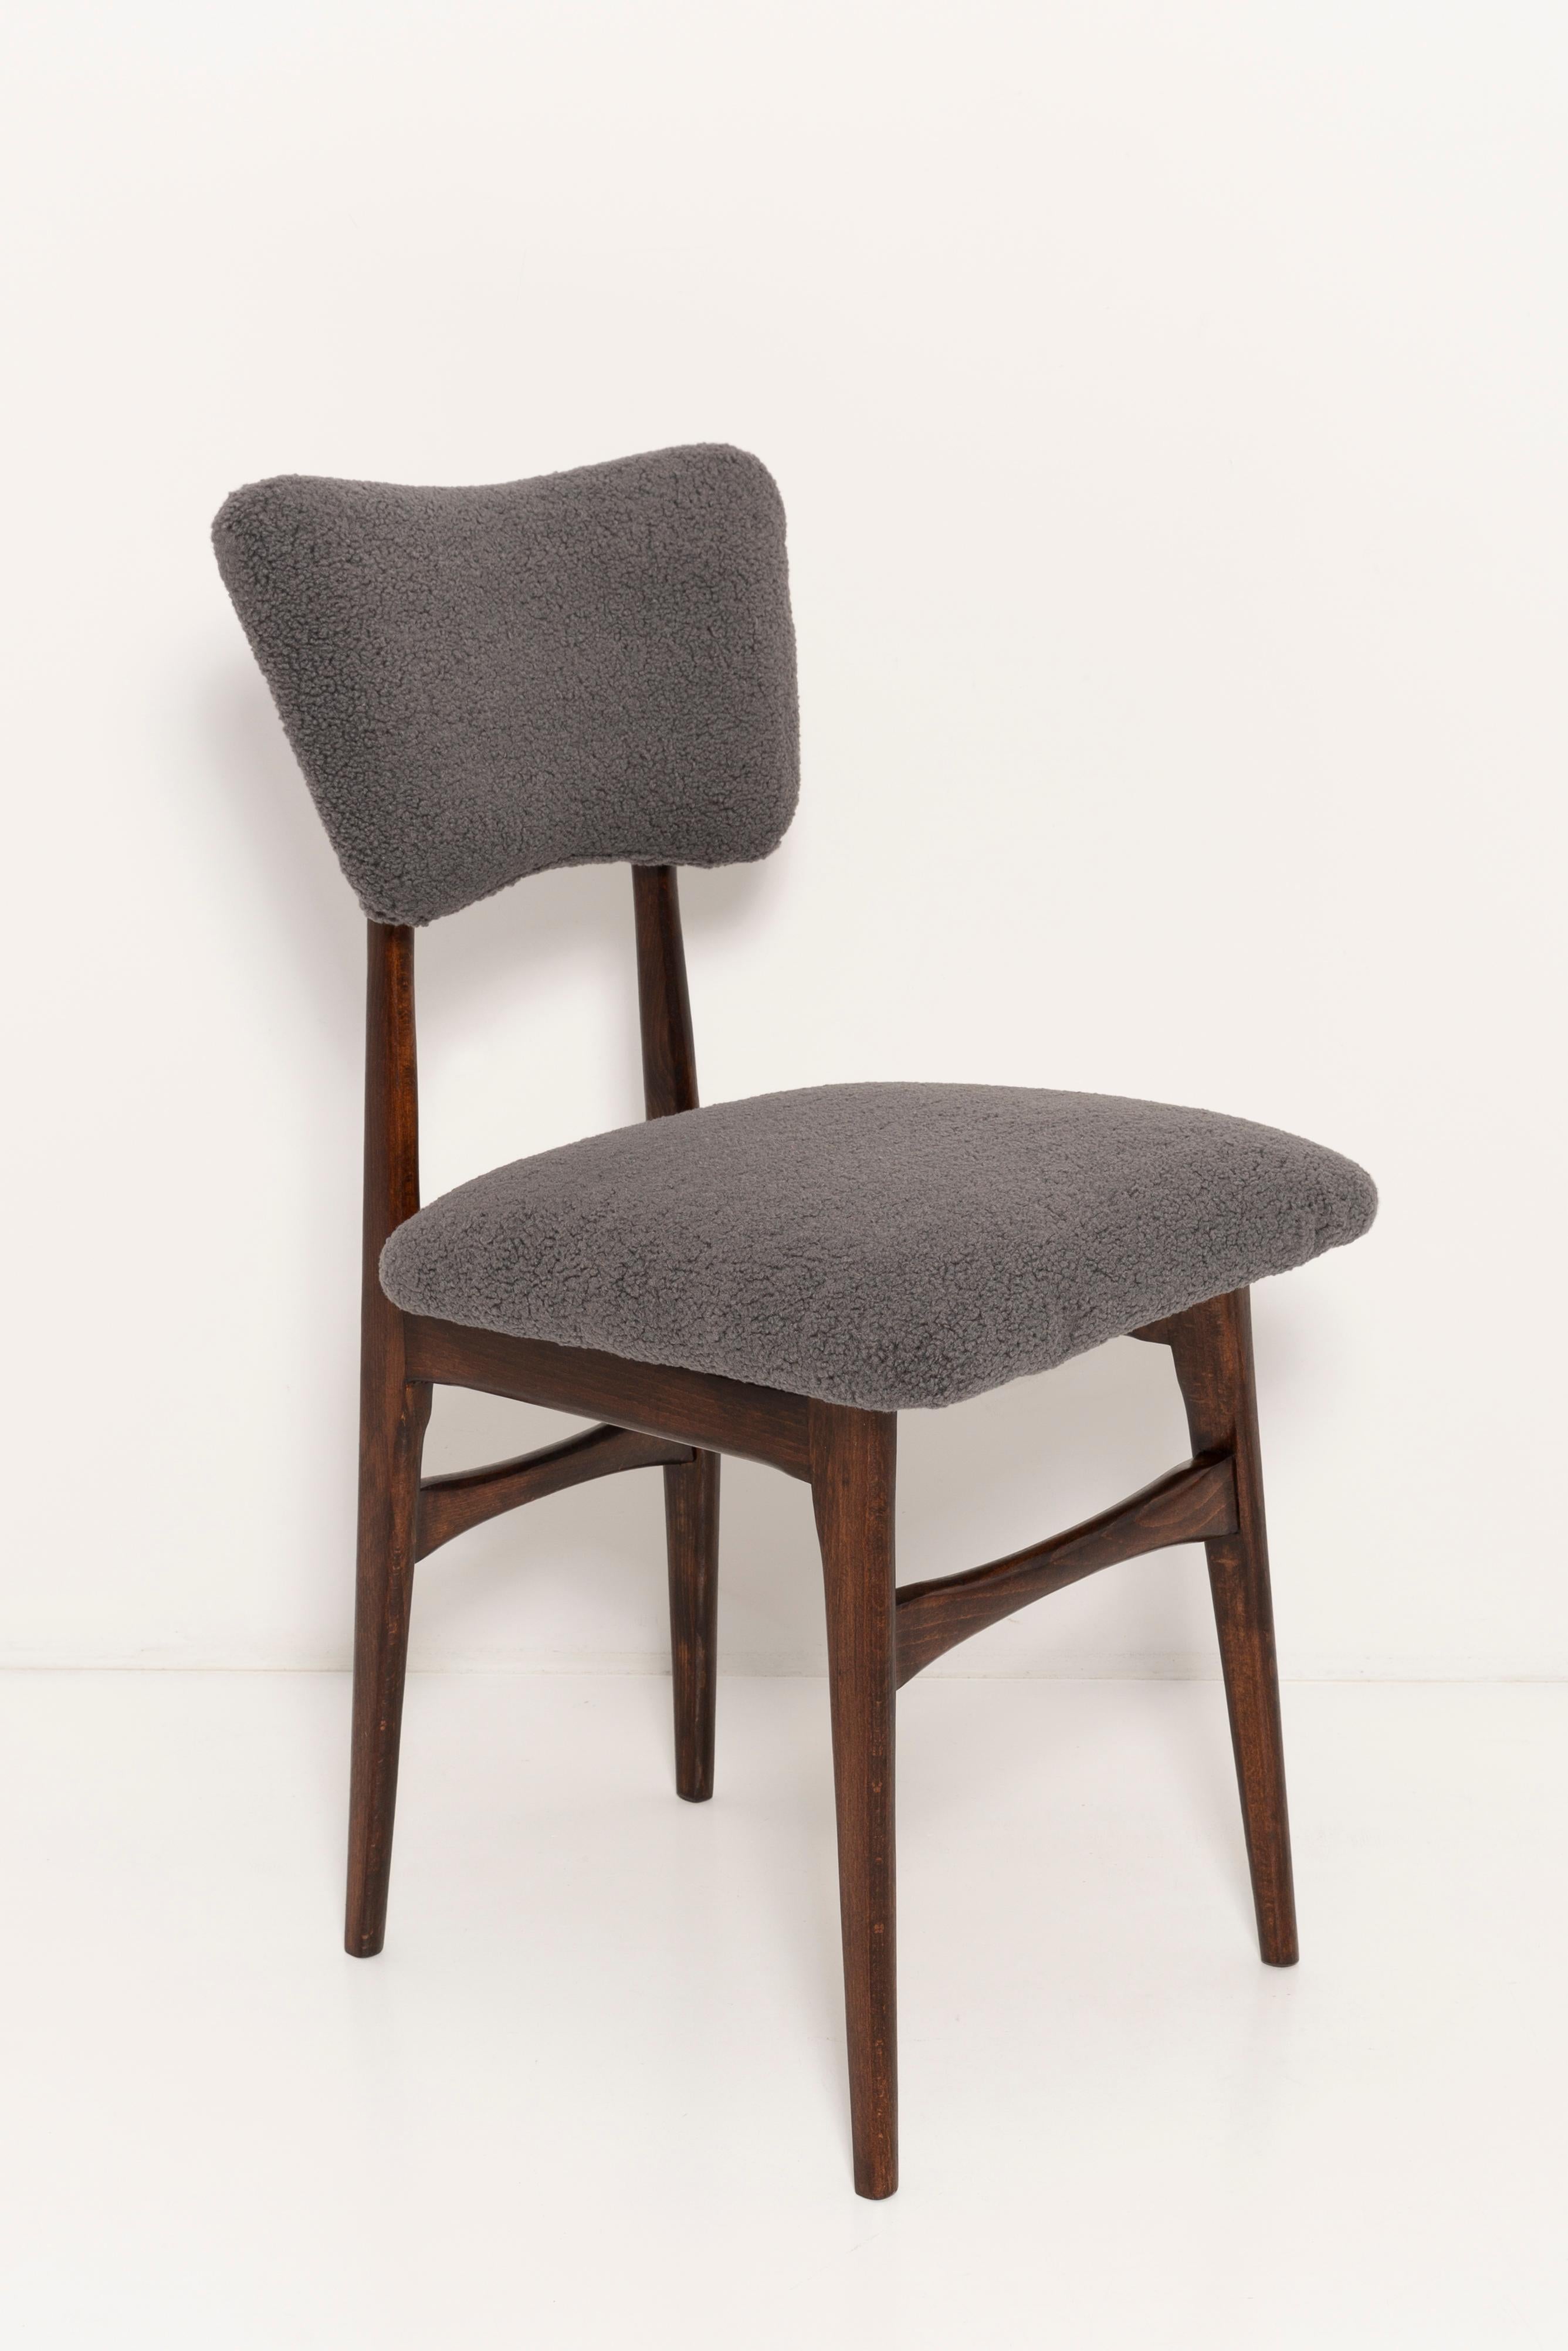 Chaise conçue par le professeur Rajmund Halas. Fabriqué en bois de hêtre. Le fauteuil a subi une rénovation complète de la tapisserie et les boiseries ont été rafraîchies. L'assise et le dossier sont habillés d'un tissu bouclé gris foncé (couleur